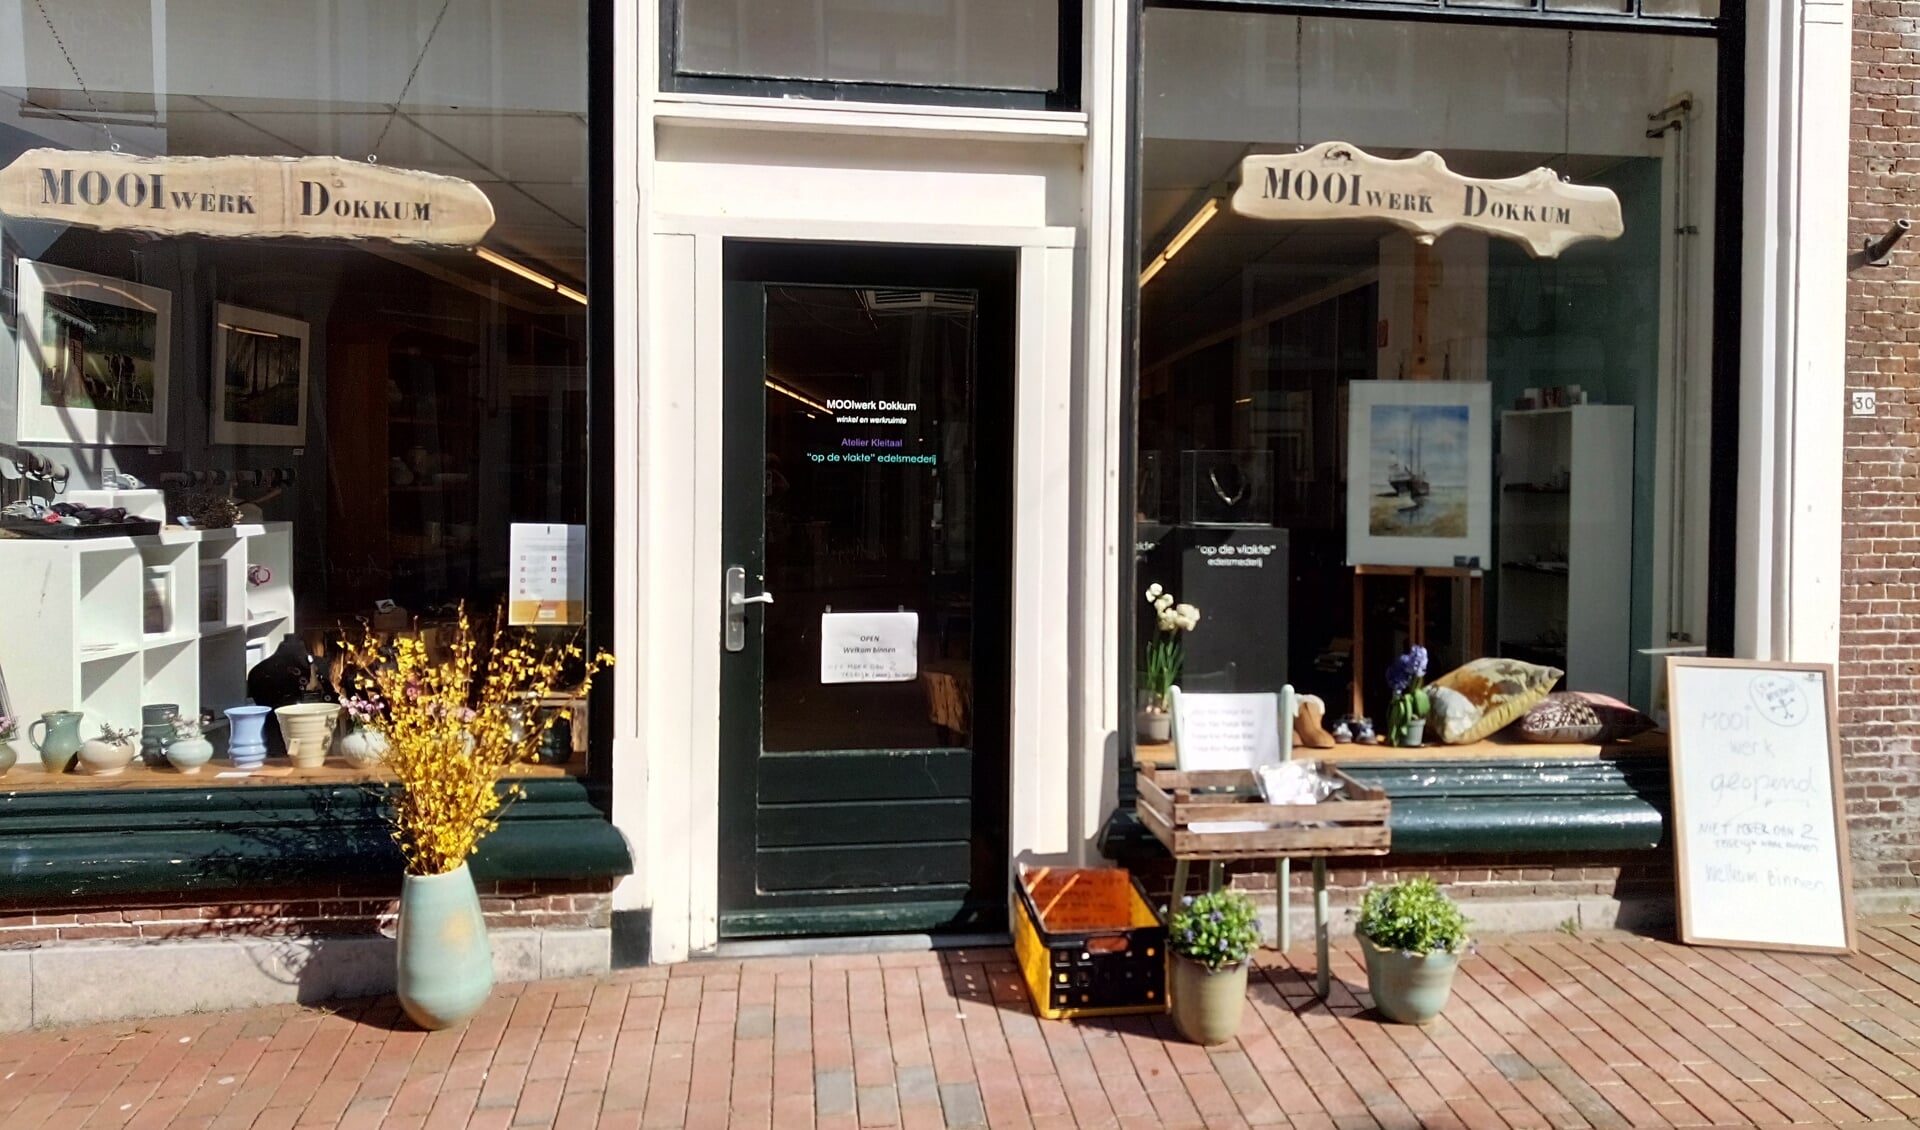 De winkel van MOOIwerk aan de Hoogstraat in Dokkum gaat 
sluiten.